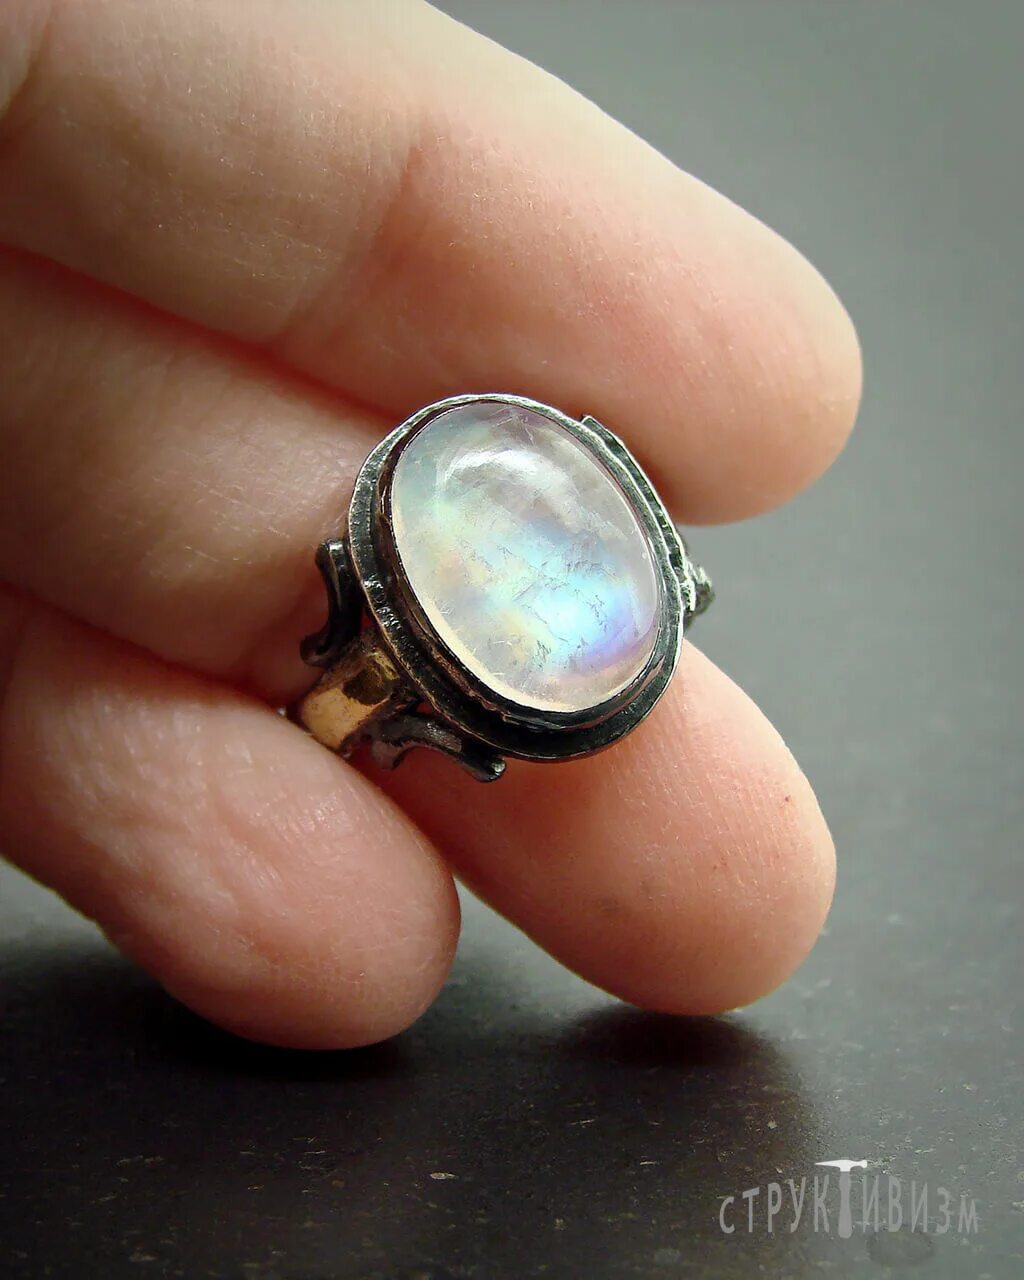 Купить кольцо в кемерово. Кольцо с камнем. Кольцо с лунным камнем. Крупные кольца. Кольцо с голубым камнем.